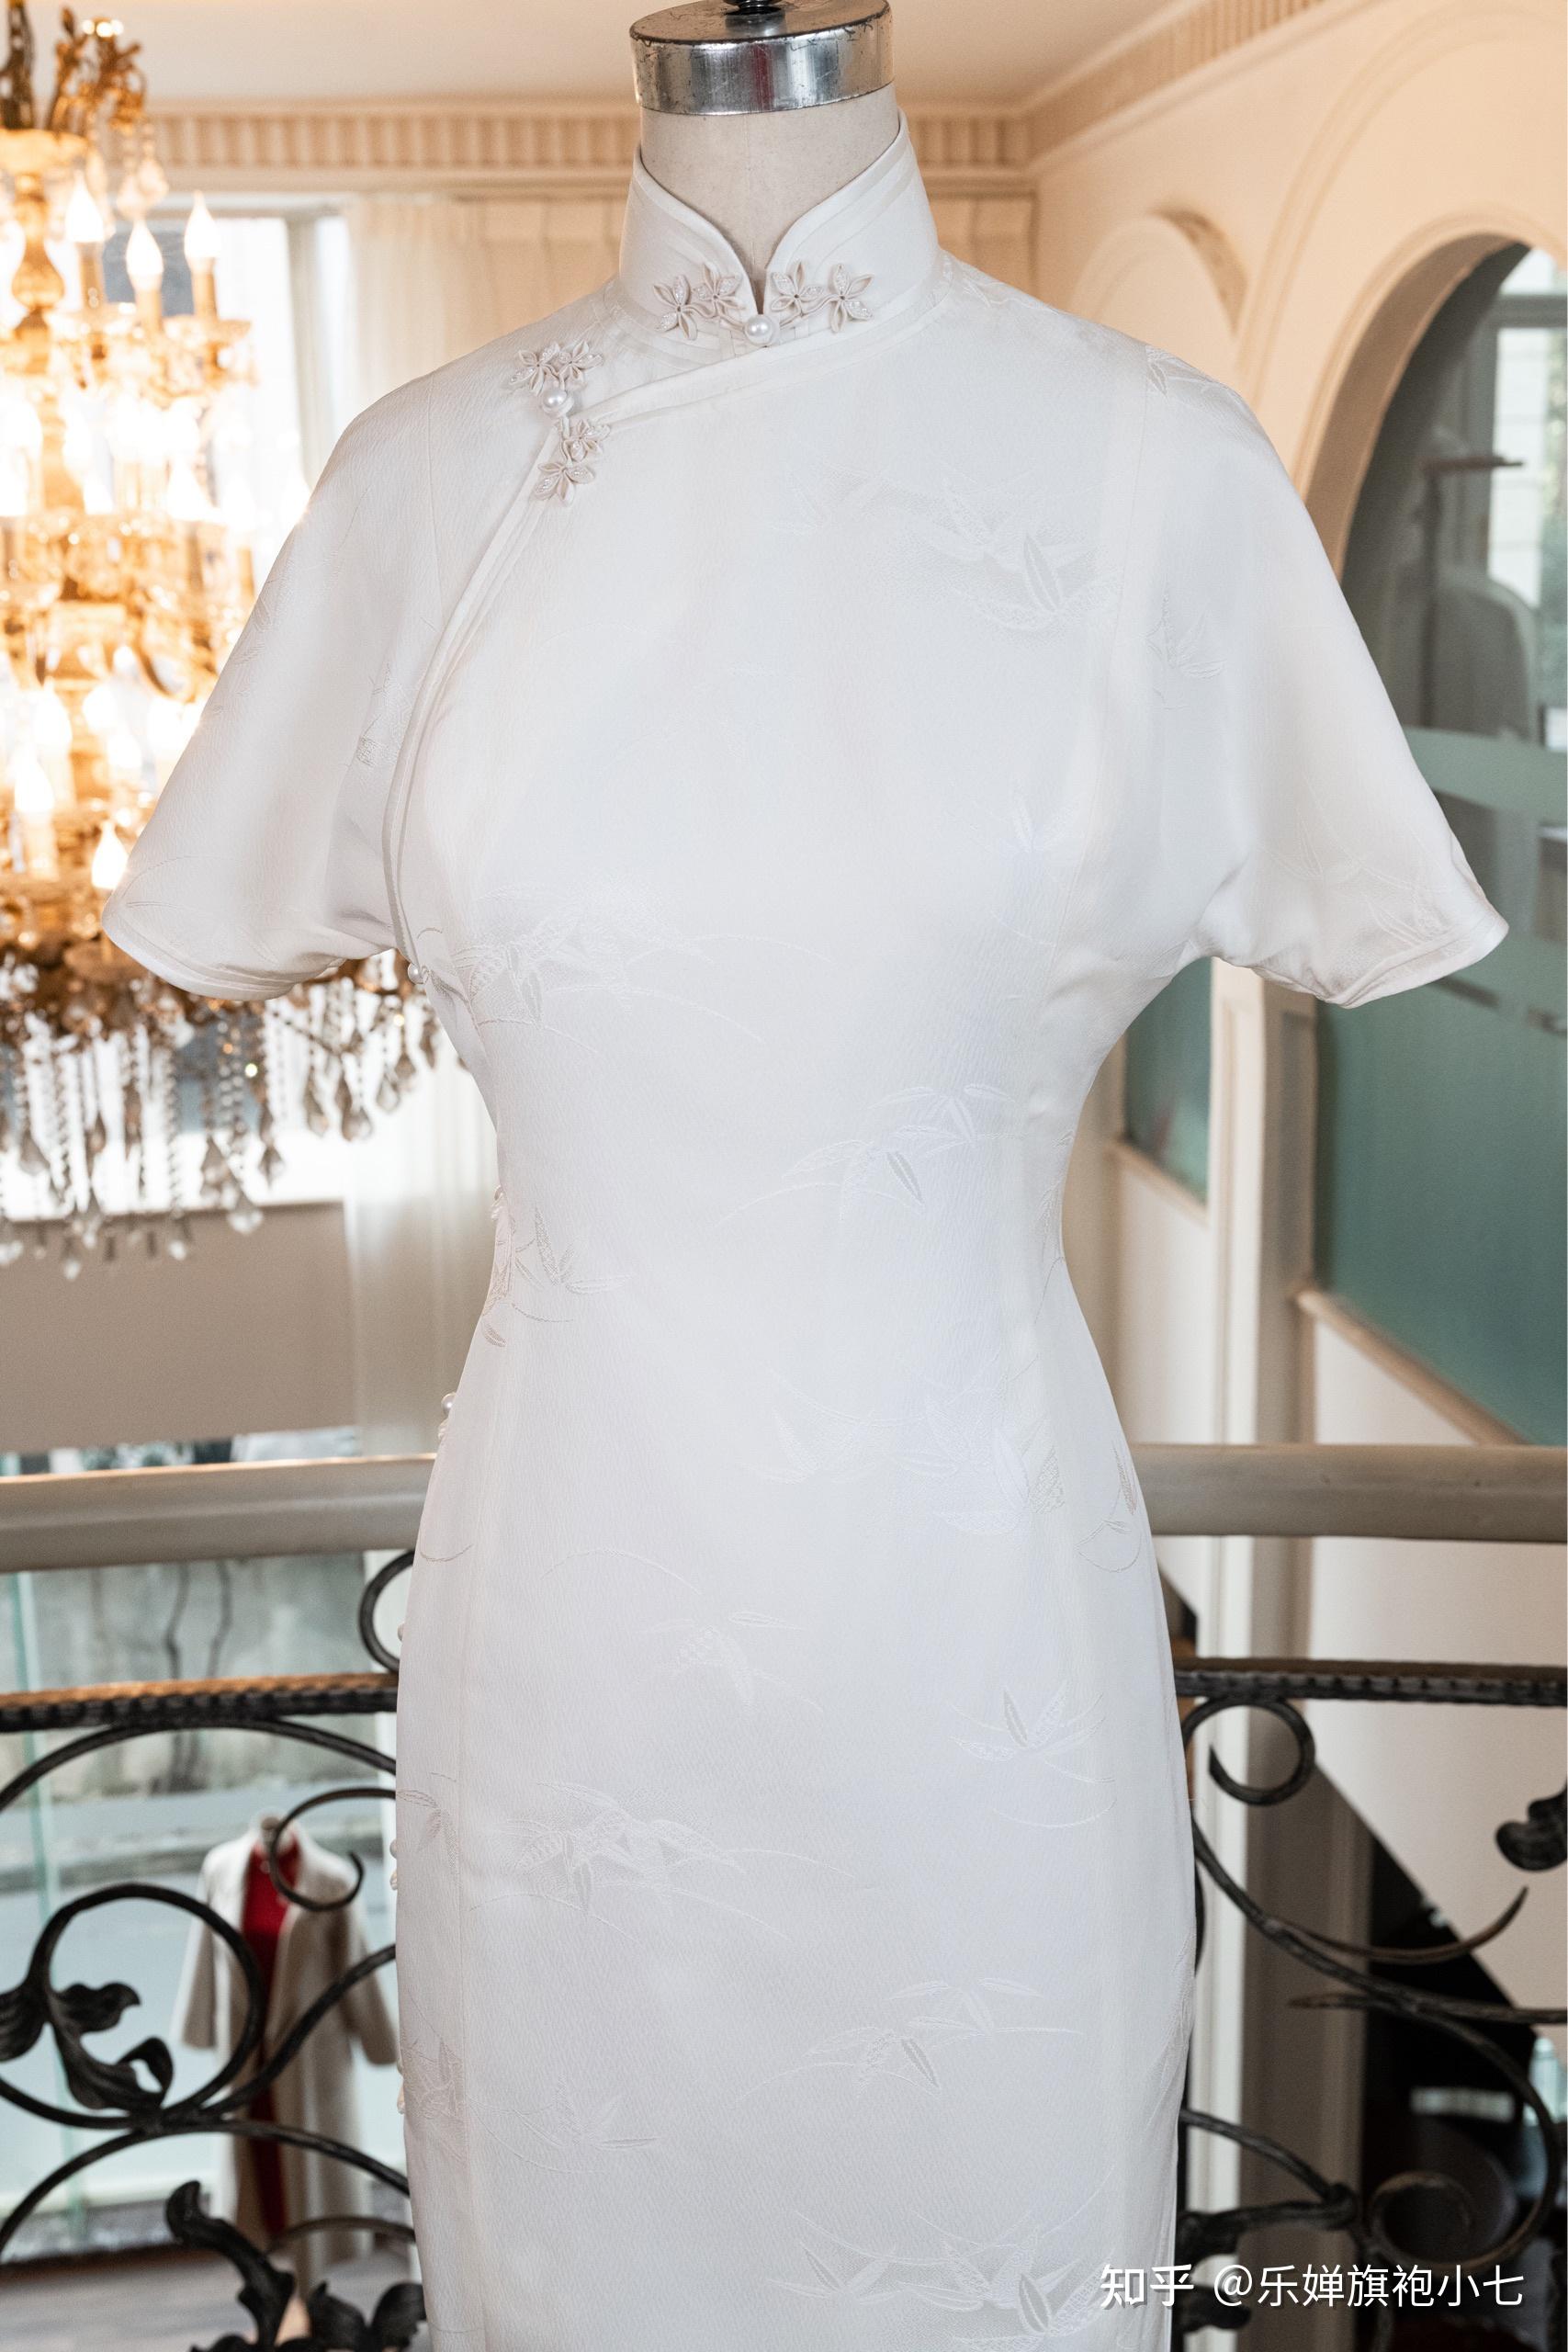 白色旗袍,在旗袍最里是一个特殊的存在,它不同于其他颜色的旗袍,它倦